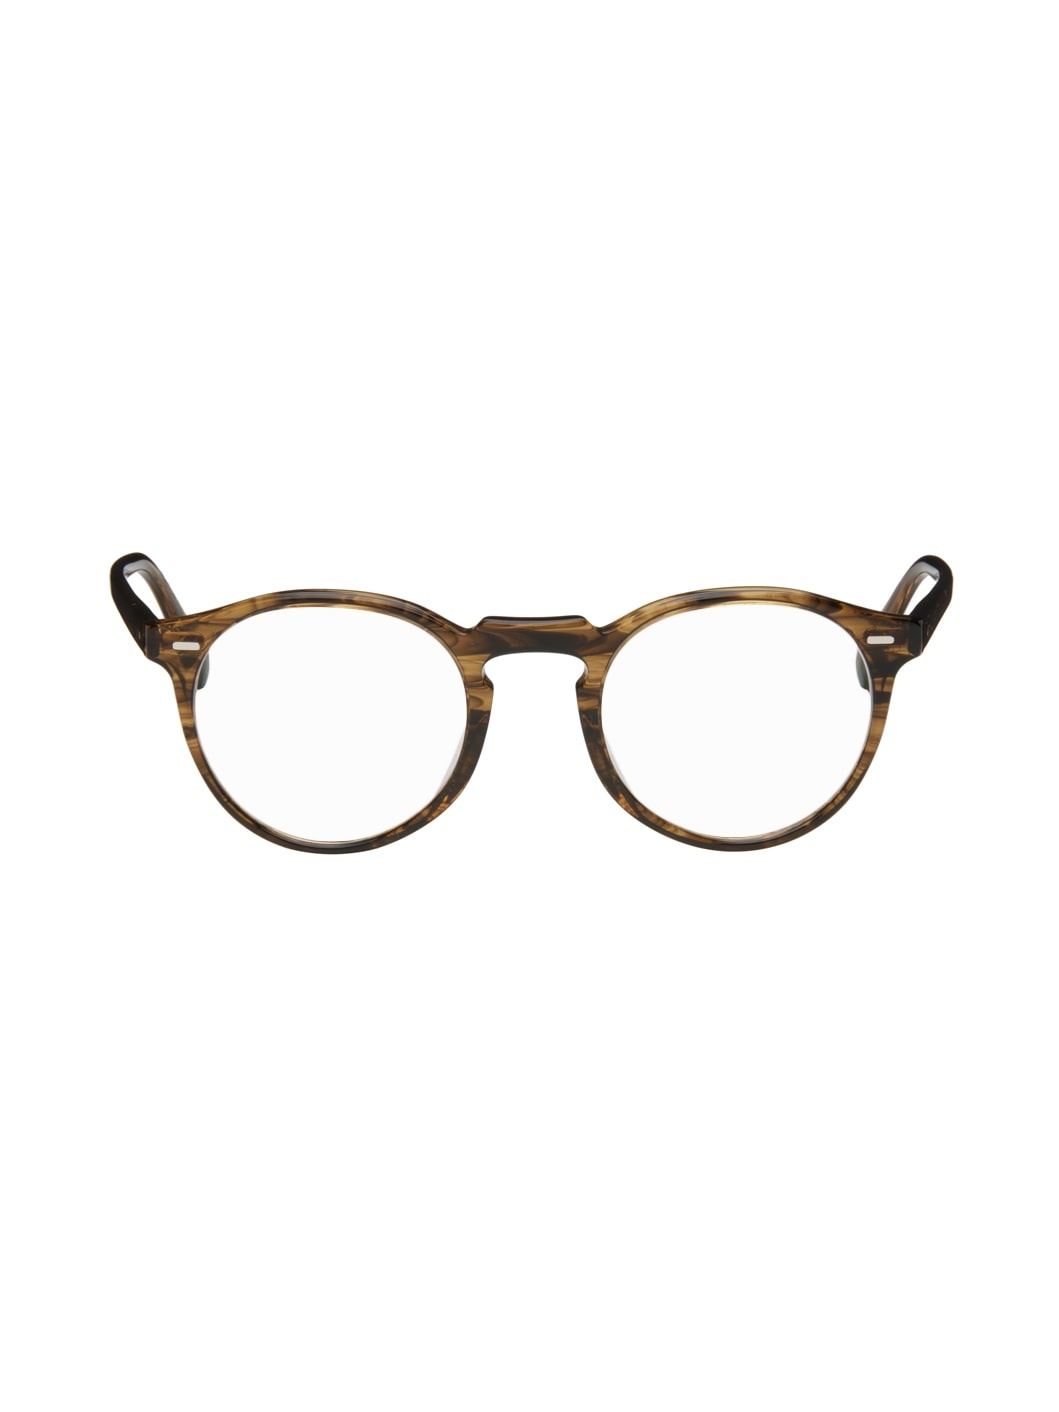 Tortoiseshell Gregory Peck Glasses - 1